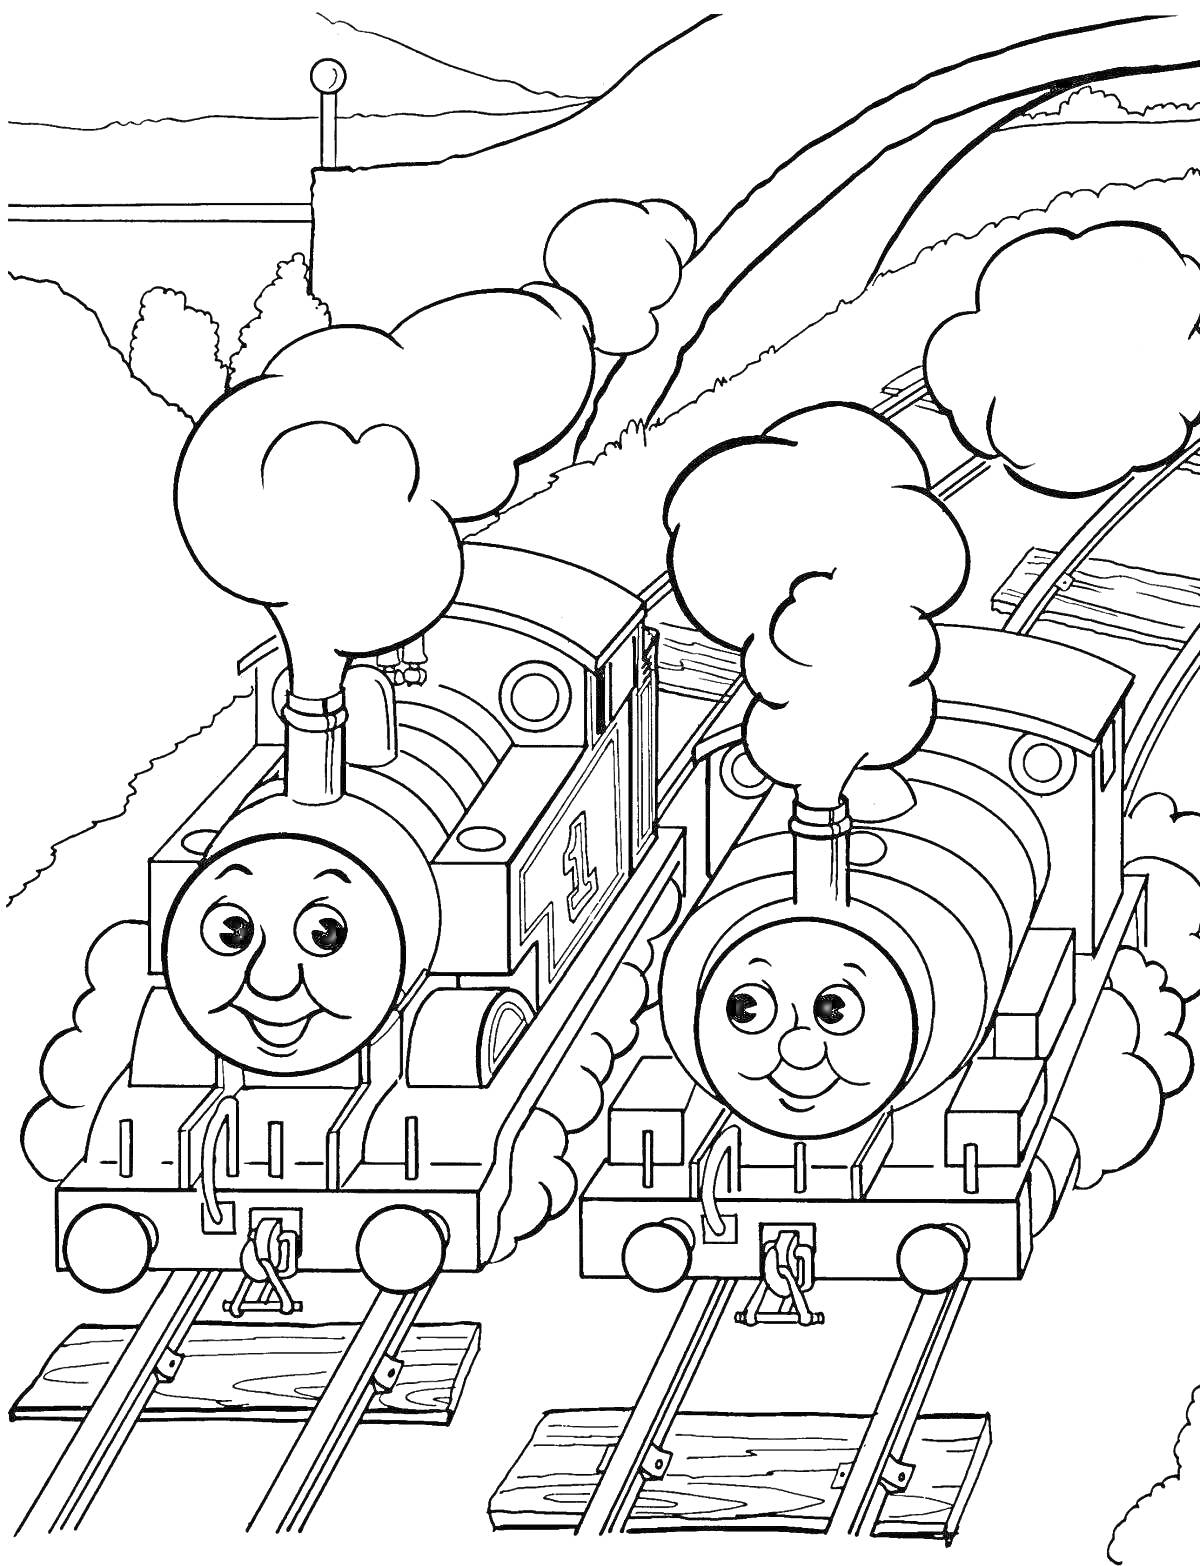 Раскраска Томас и Перси на железной дороге, обилие дыма, деревья и холмы на заднем плане